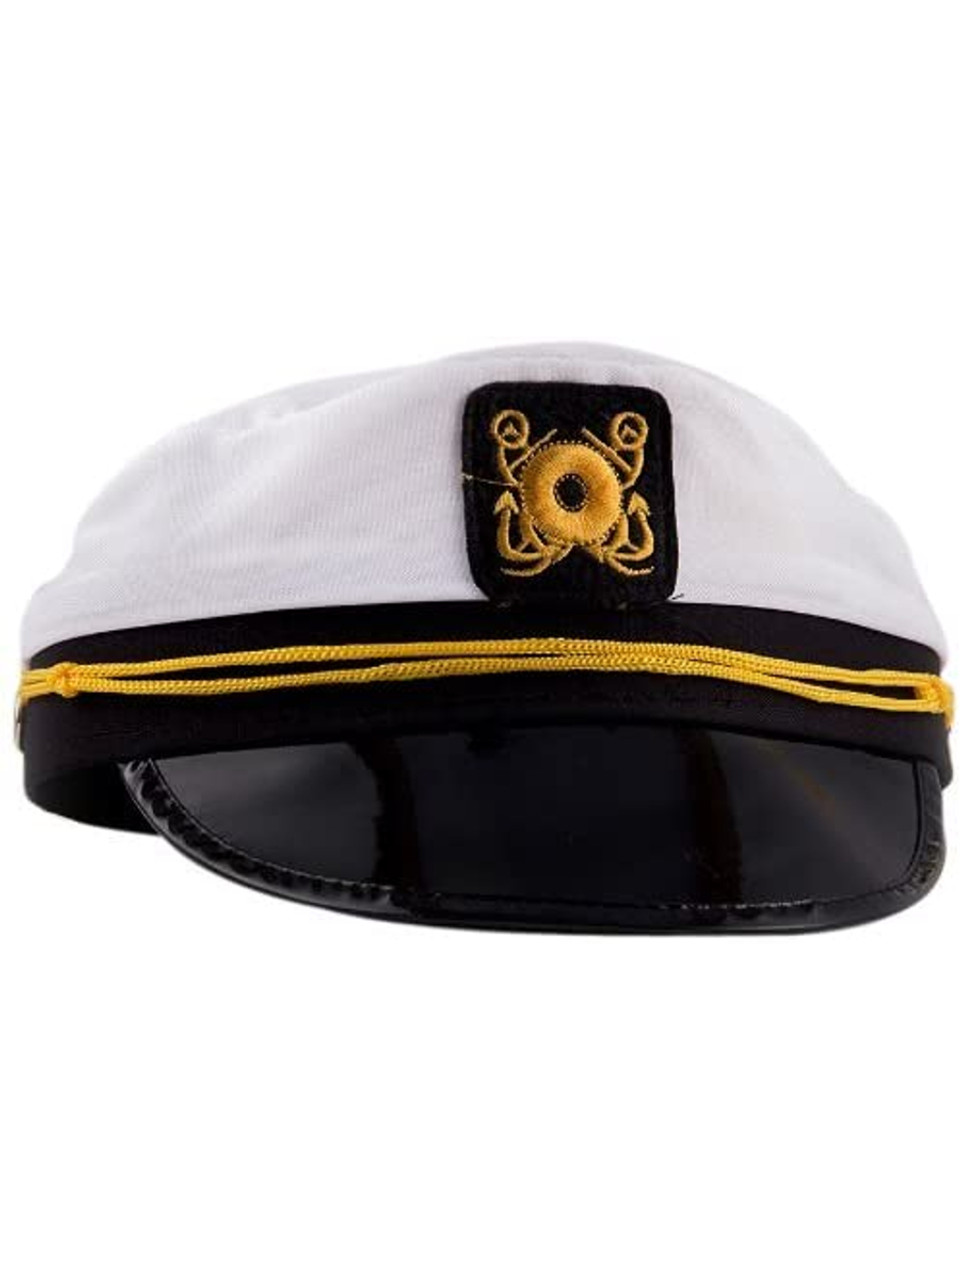 Yacht Captain Cap